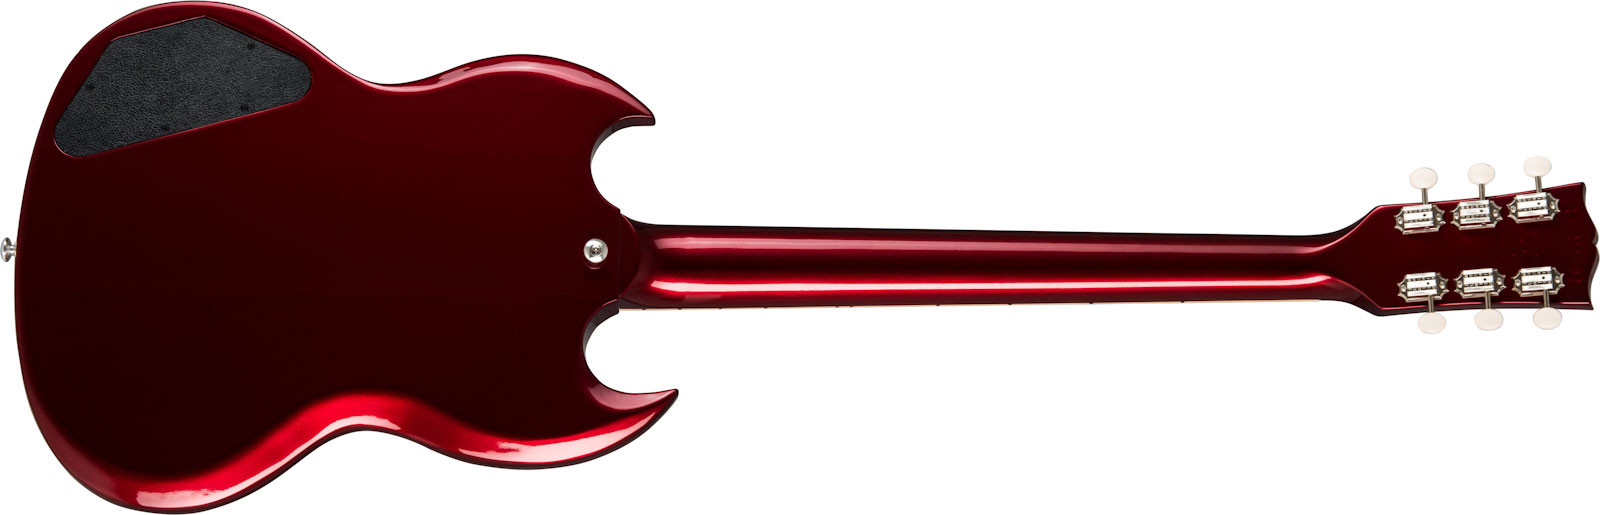 Gibson Sp Special Original 2p90 Ht Rw - Vintage Sparkling Burgundy - Retro-rock elektrische gitaar - Variation 1